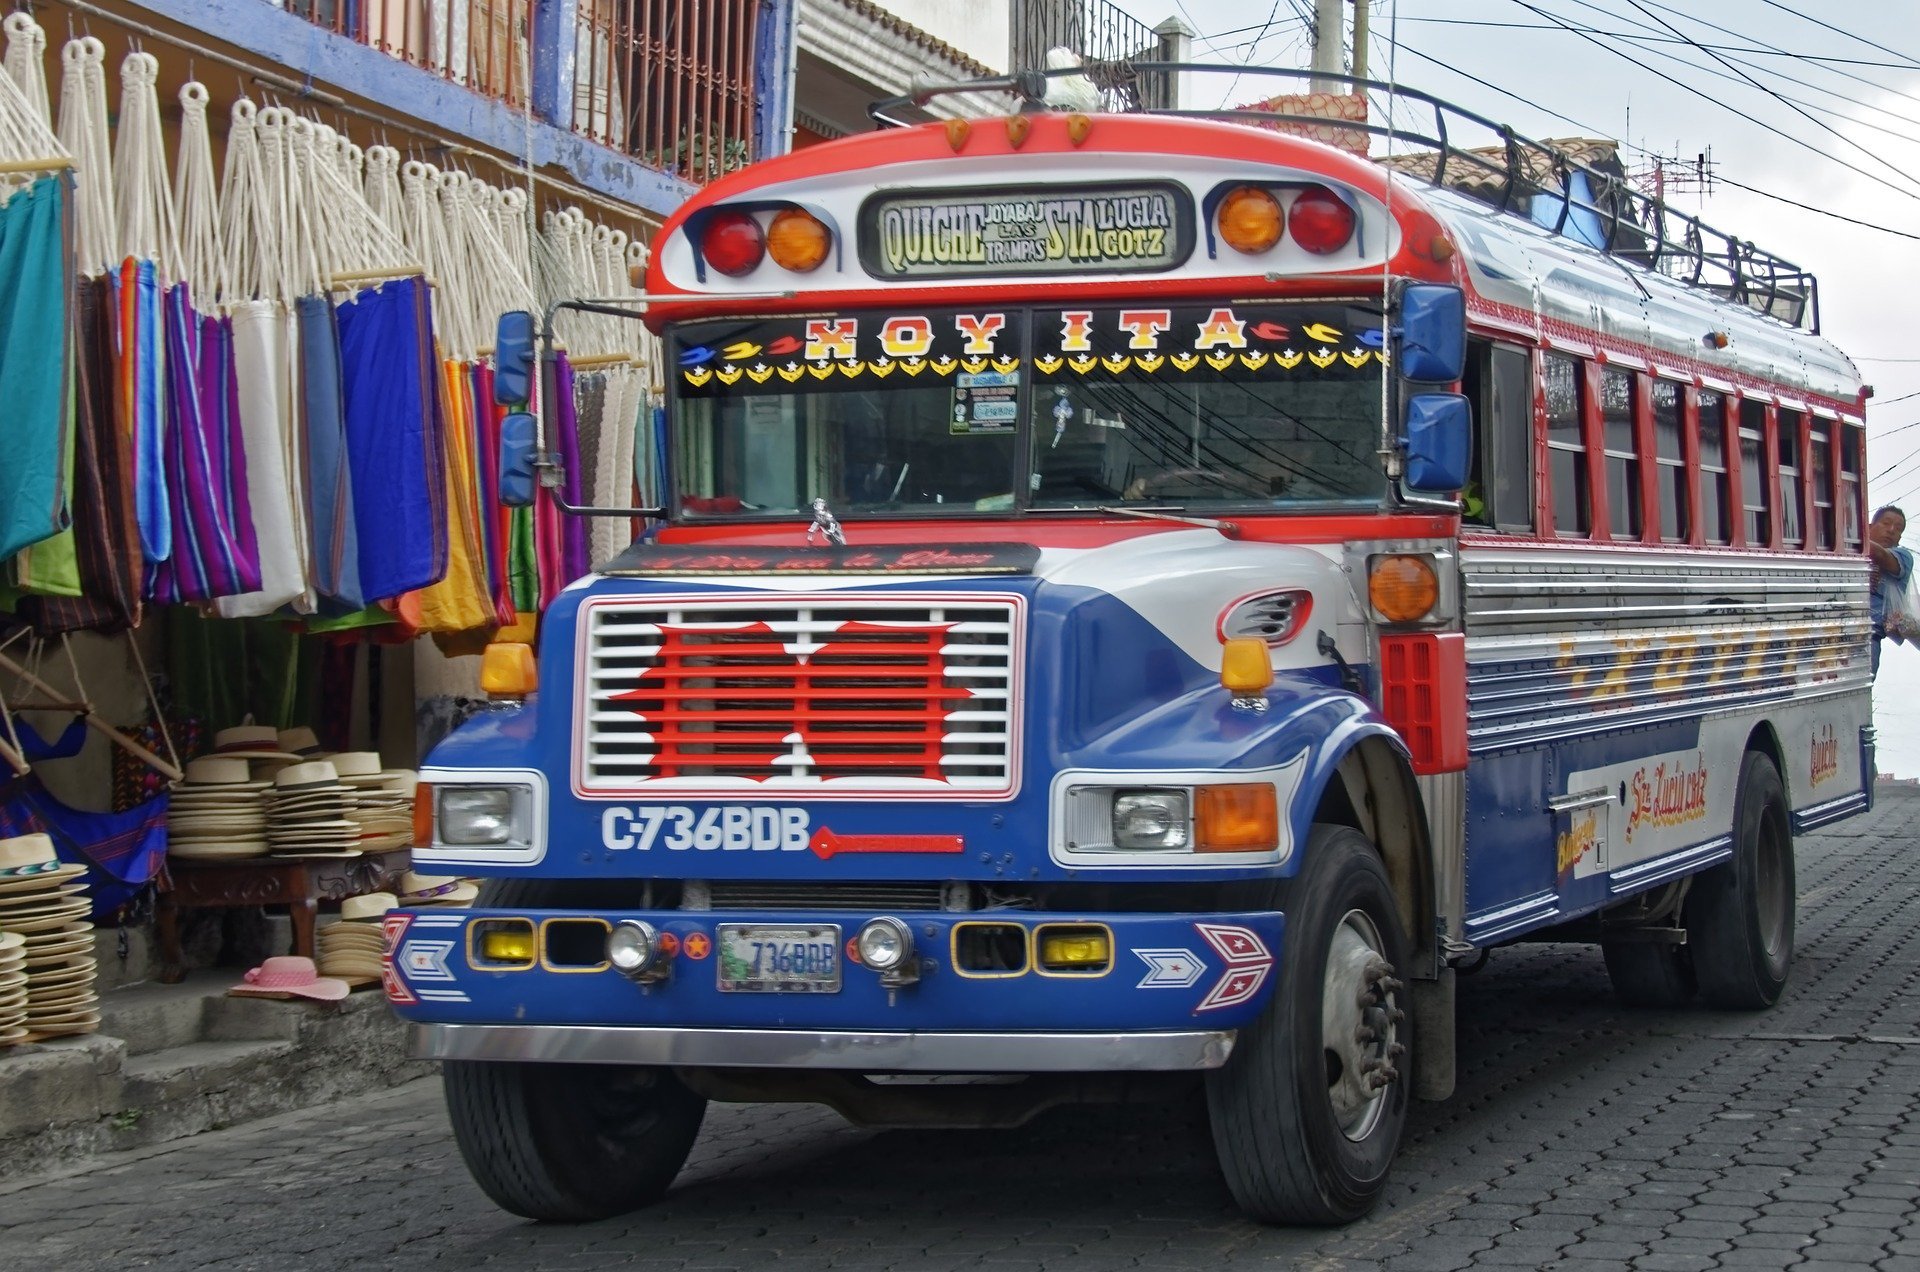 Ein typischer bunter Bus in Antigua.